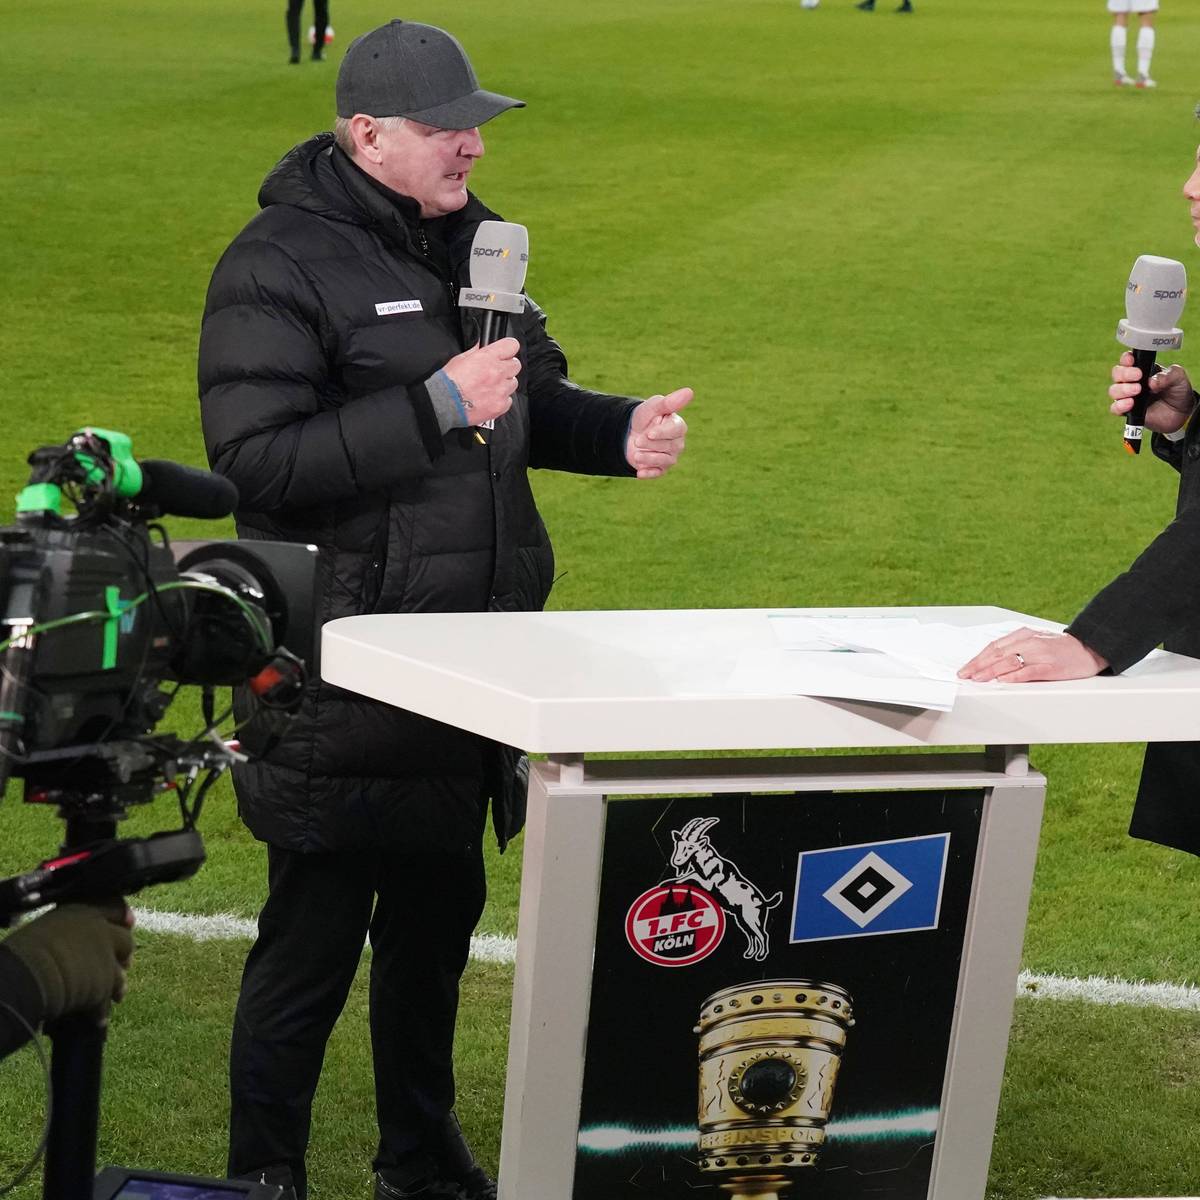 SPORT1 Moderator Thomas Helmer und SPORT1 Experte Stefan Effenberg beim Pokalspiel 1.FC Köln gegen den Hamburger SV